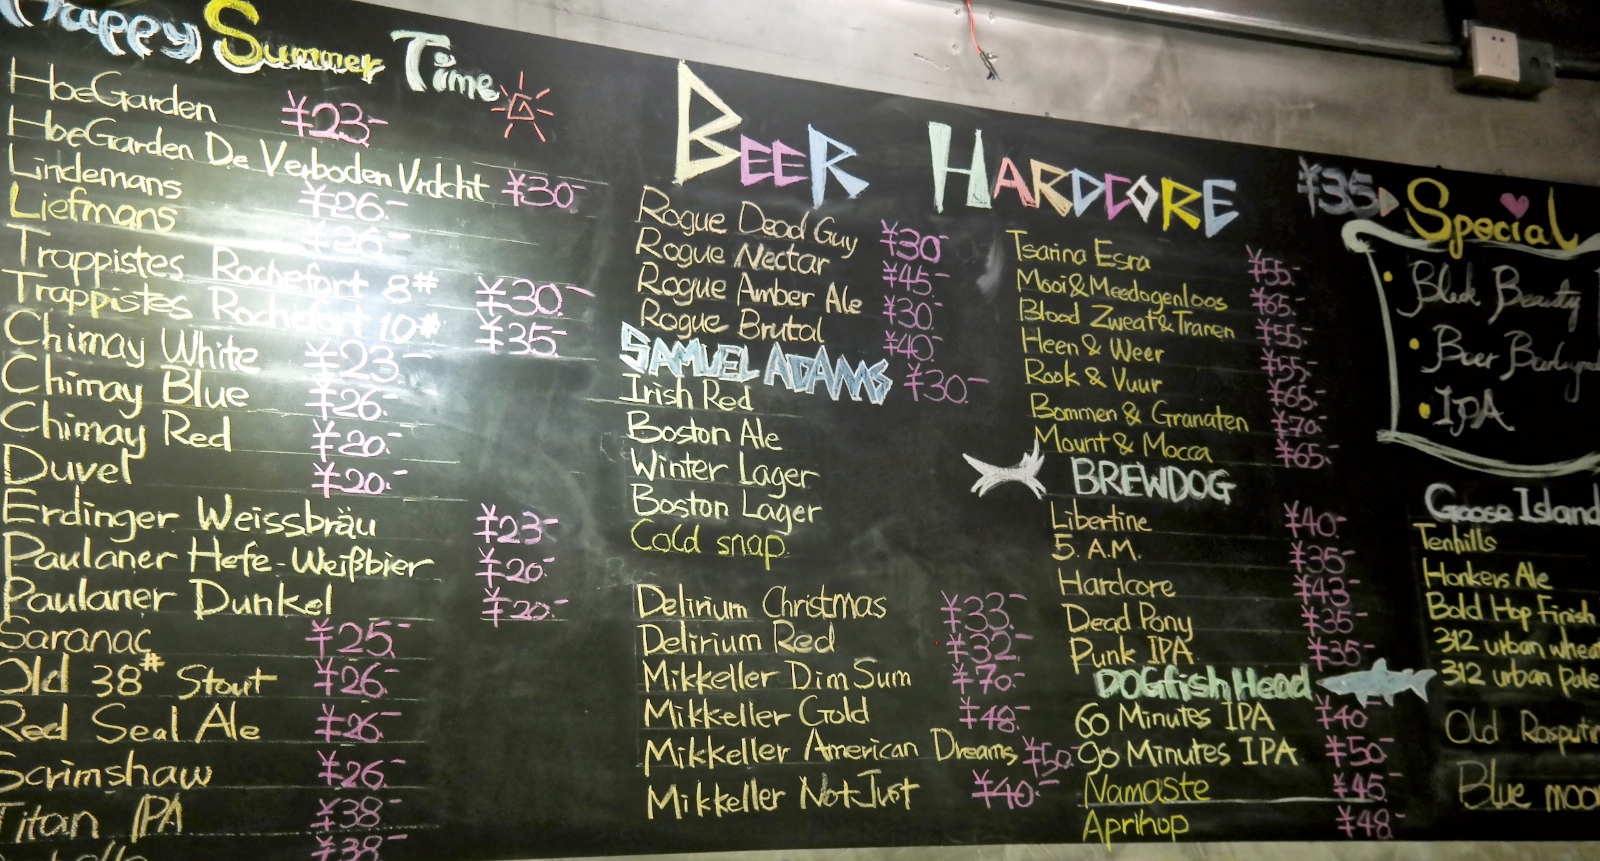 Beer Hardcore beer board.